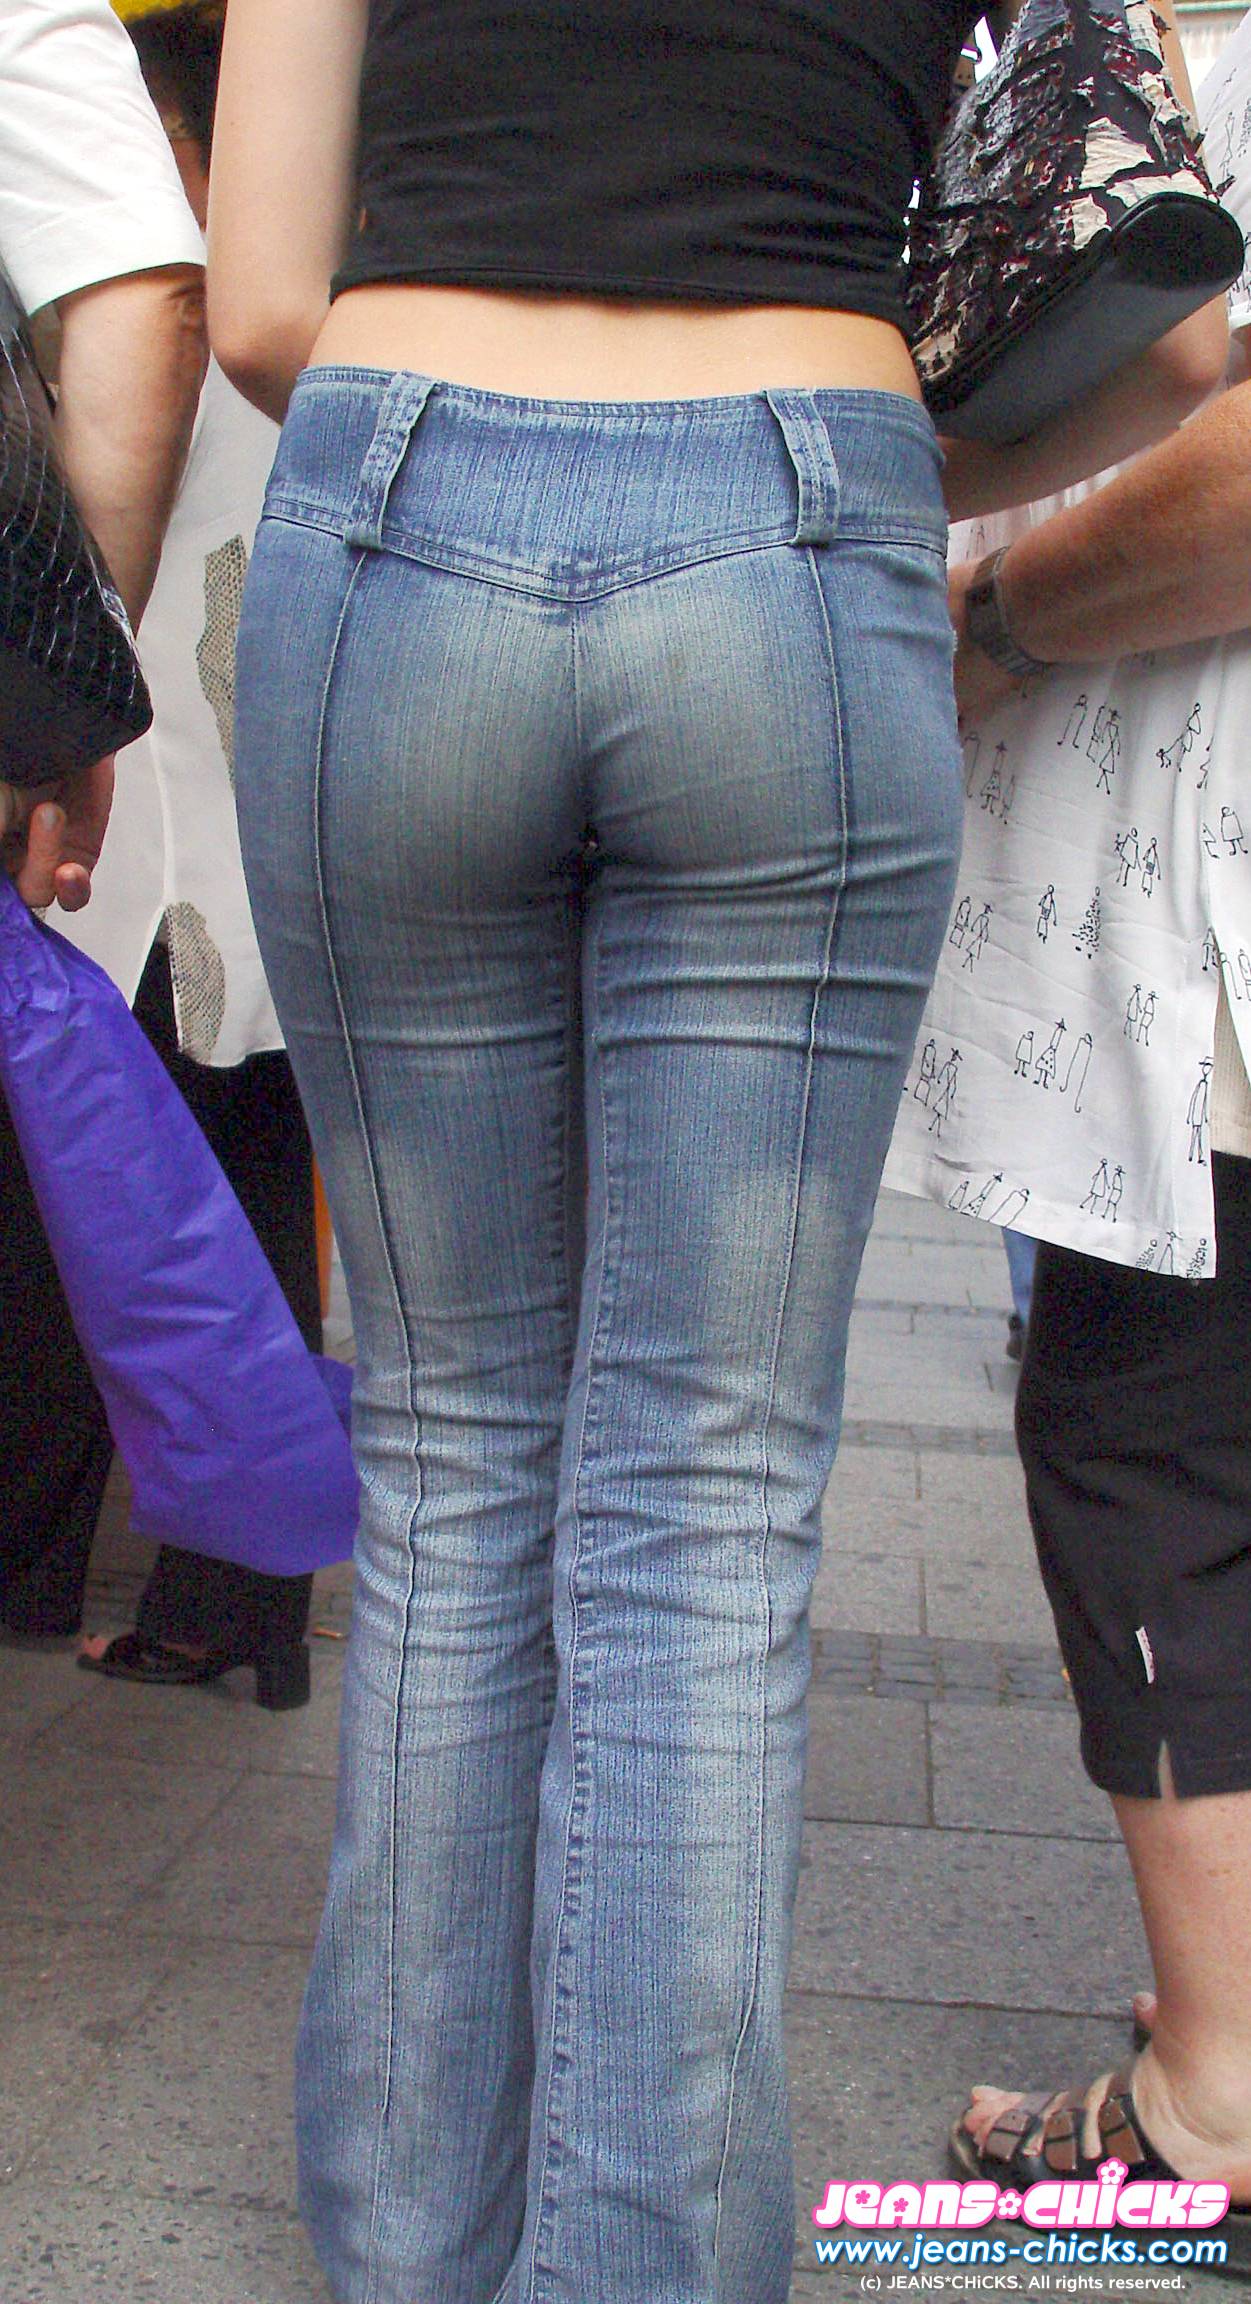 Girls in Jeans 2